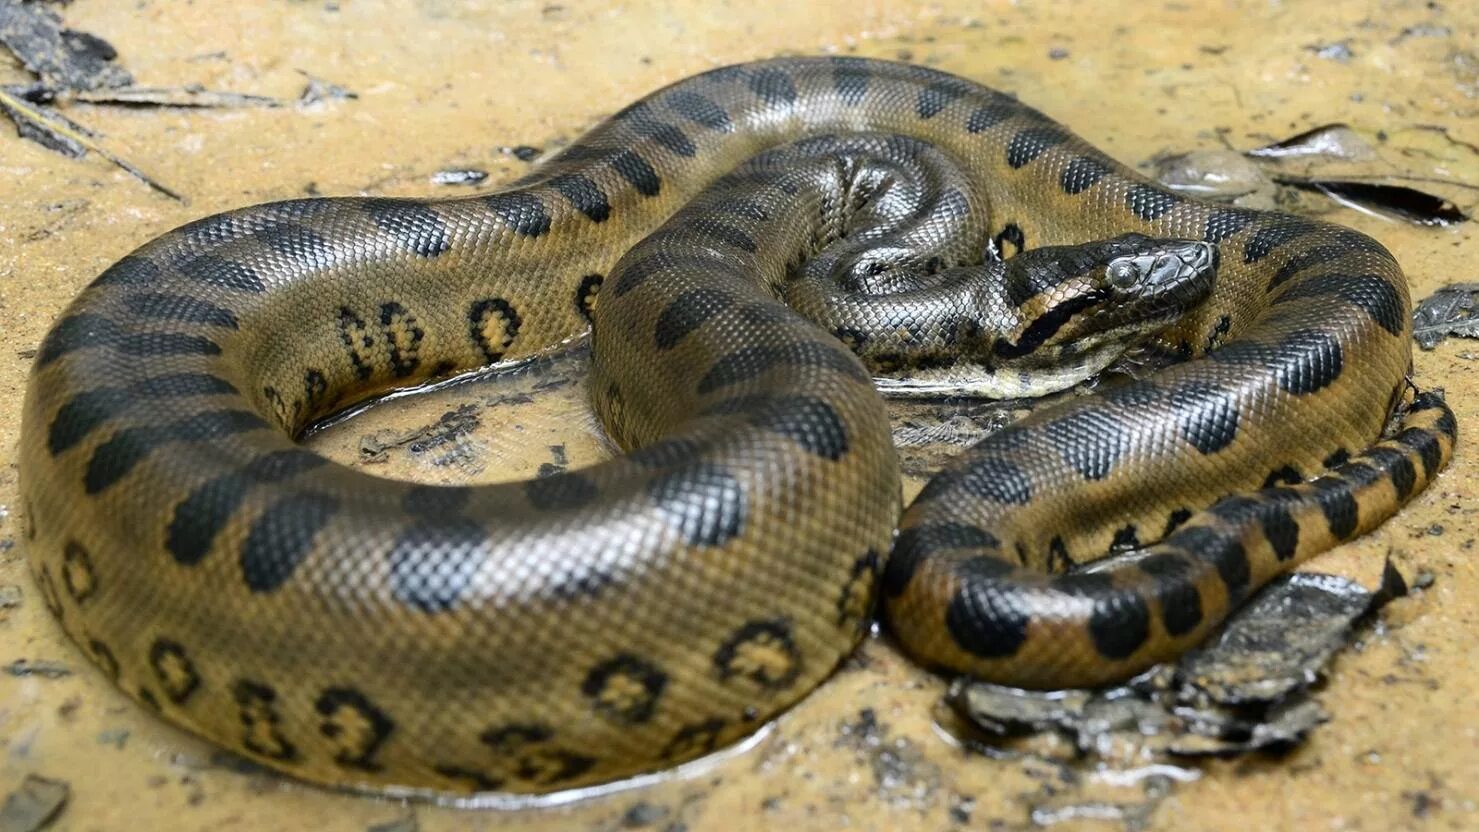 Анаконда змея. Анаконда eunectes murinus. Зеленая Анаконда (eunectes murinus). Самая гигантская анаконда